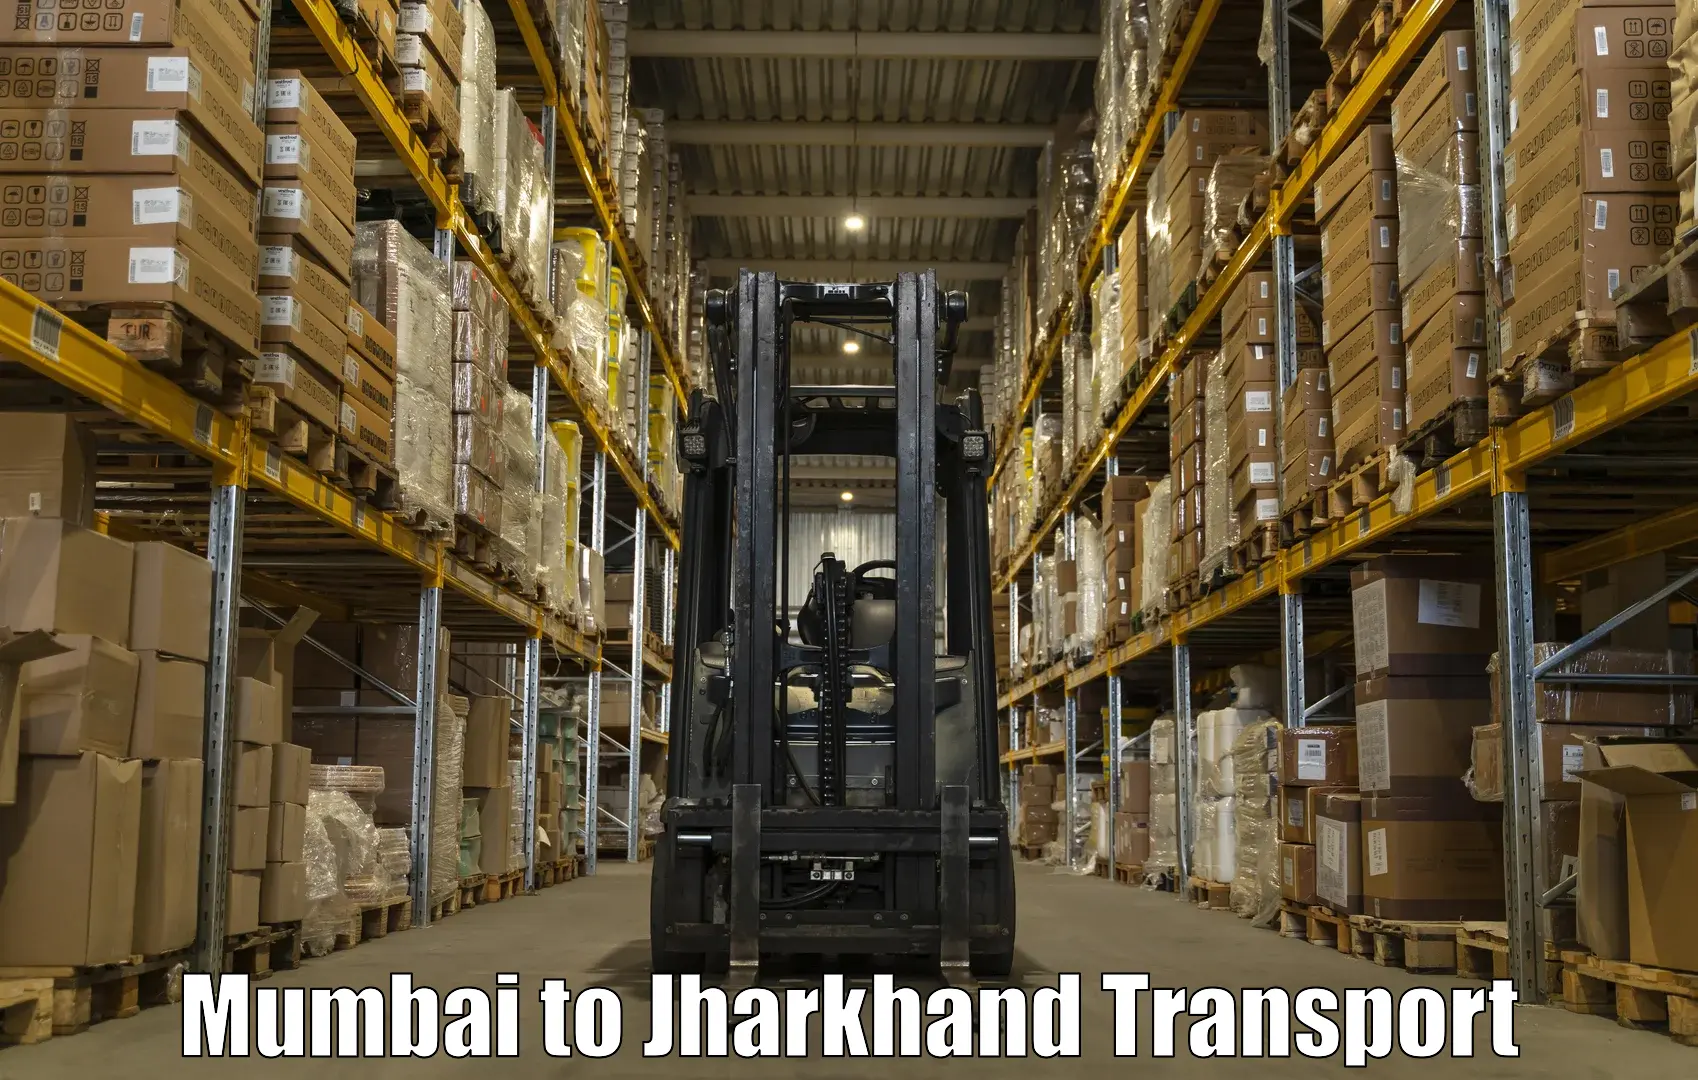 Delivery service Mumbai to Mahagama